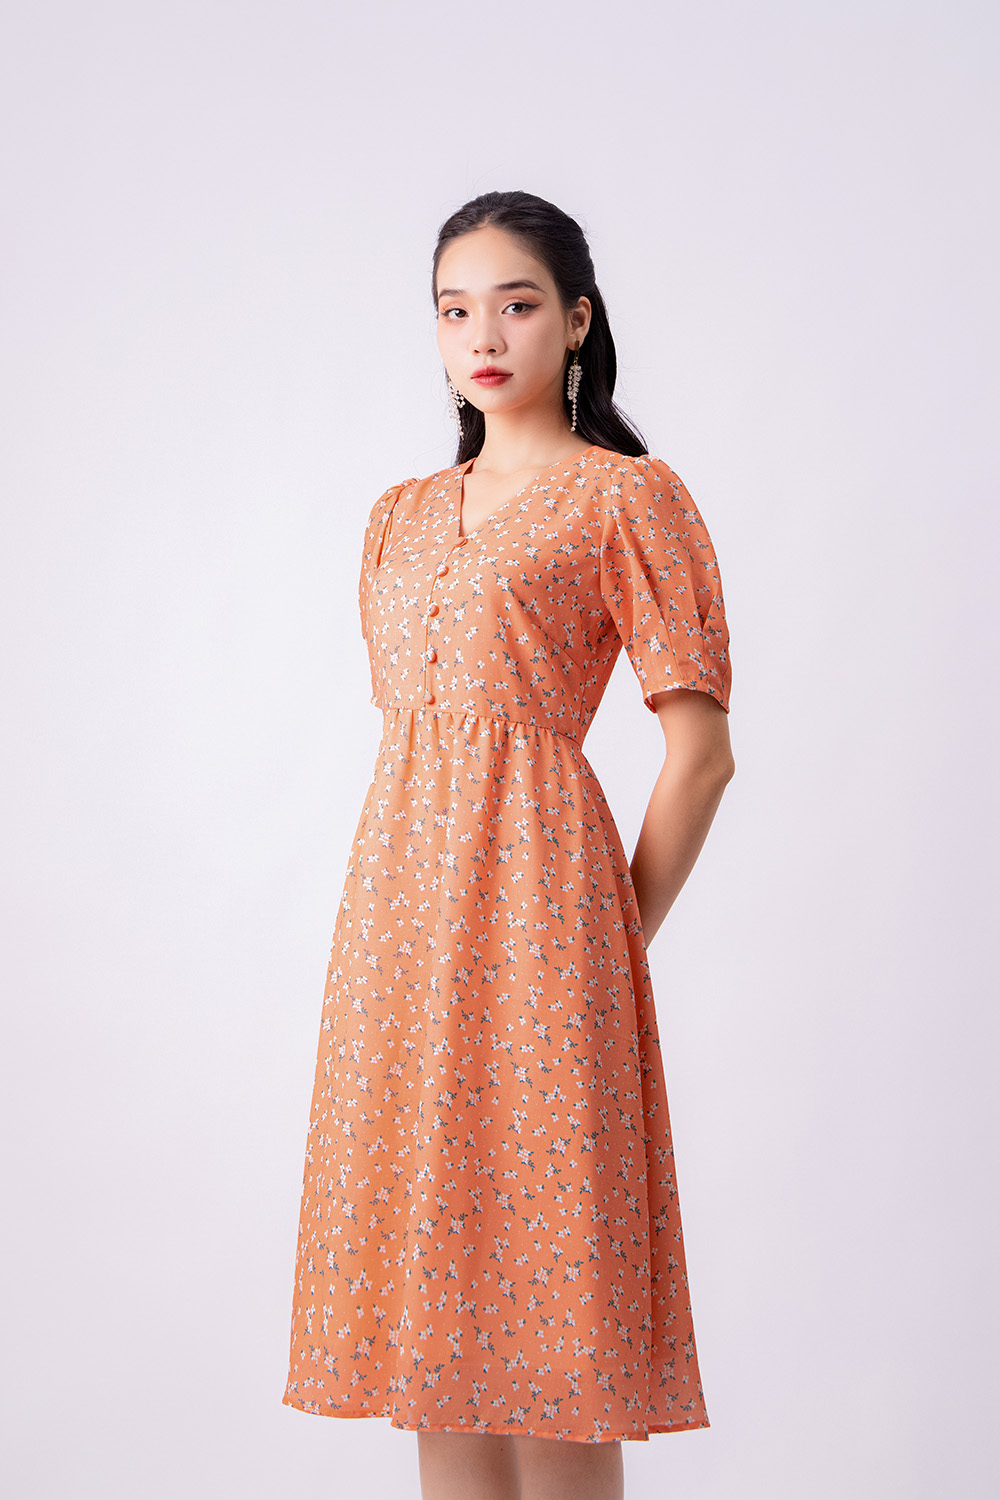 Đầm xòe hoa nhí dáng dài KK119-37 | Thời trang công sở K&K Fashion